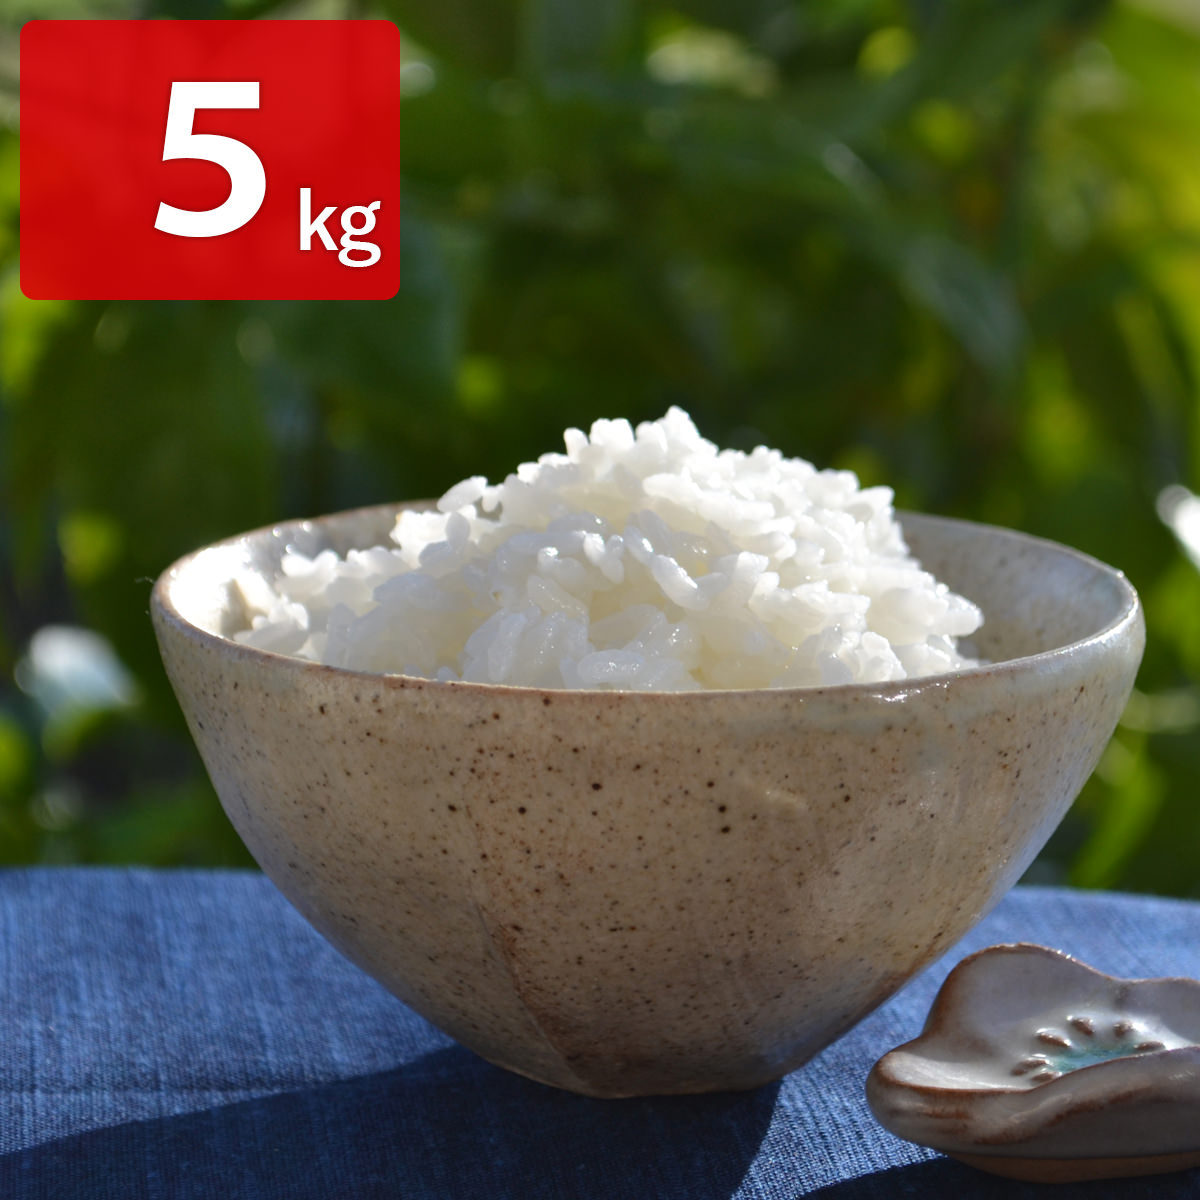 菊池掛け干し清流米 にこまる 白米 5kg 米 熊本県産 精白米 無農薬 お米 有機 ごはん 掛け干し 清流米 熊本 阿蘇 精米